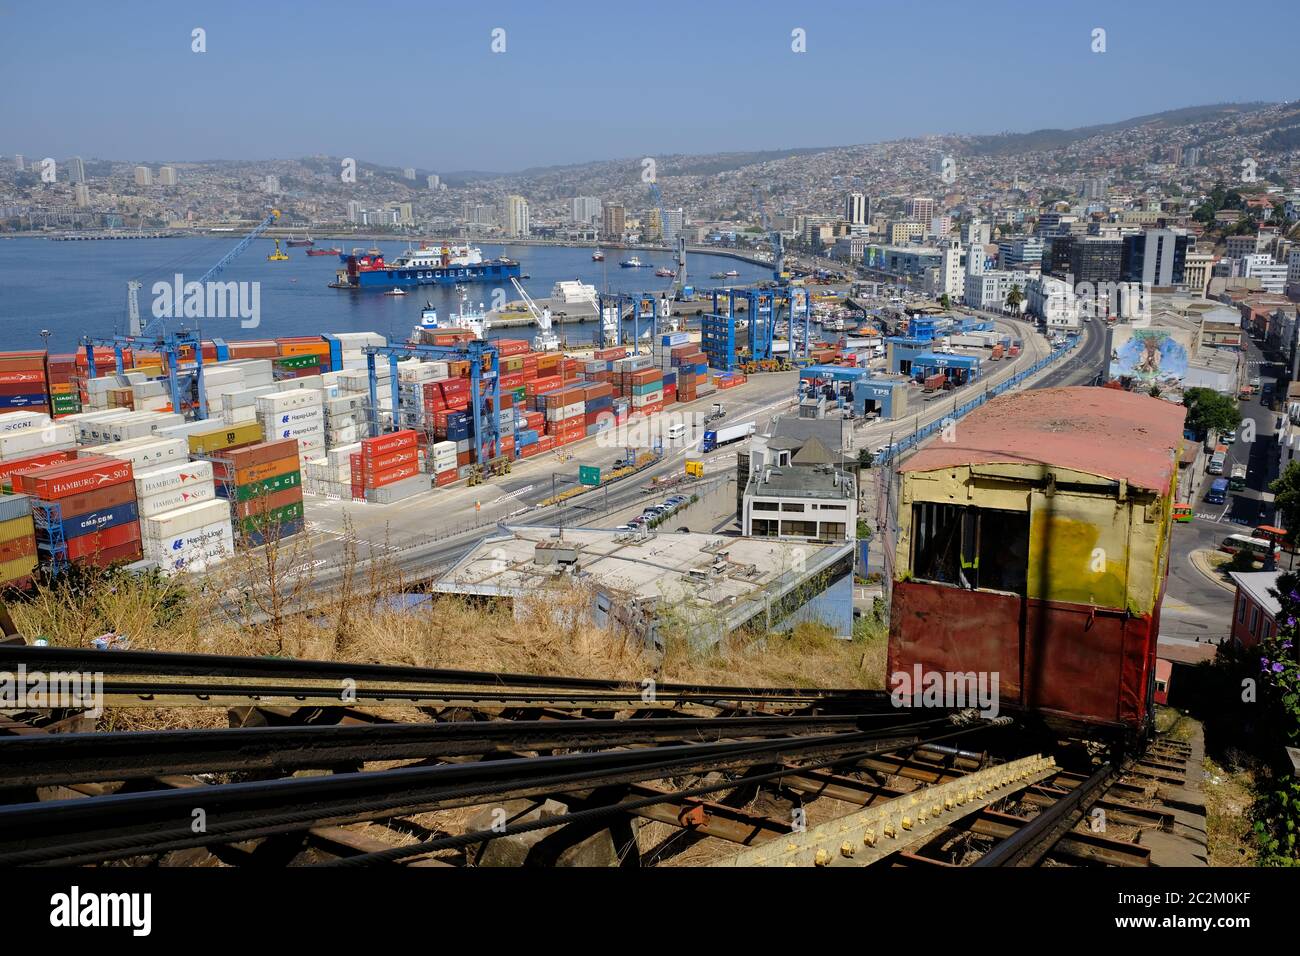 Chile Valparaiso - Artilleria funicular railway and Port of Valparaiso Stock Photo